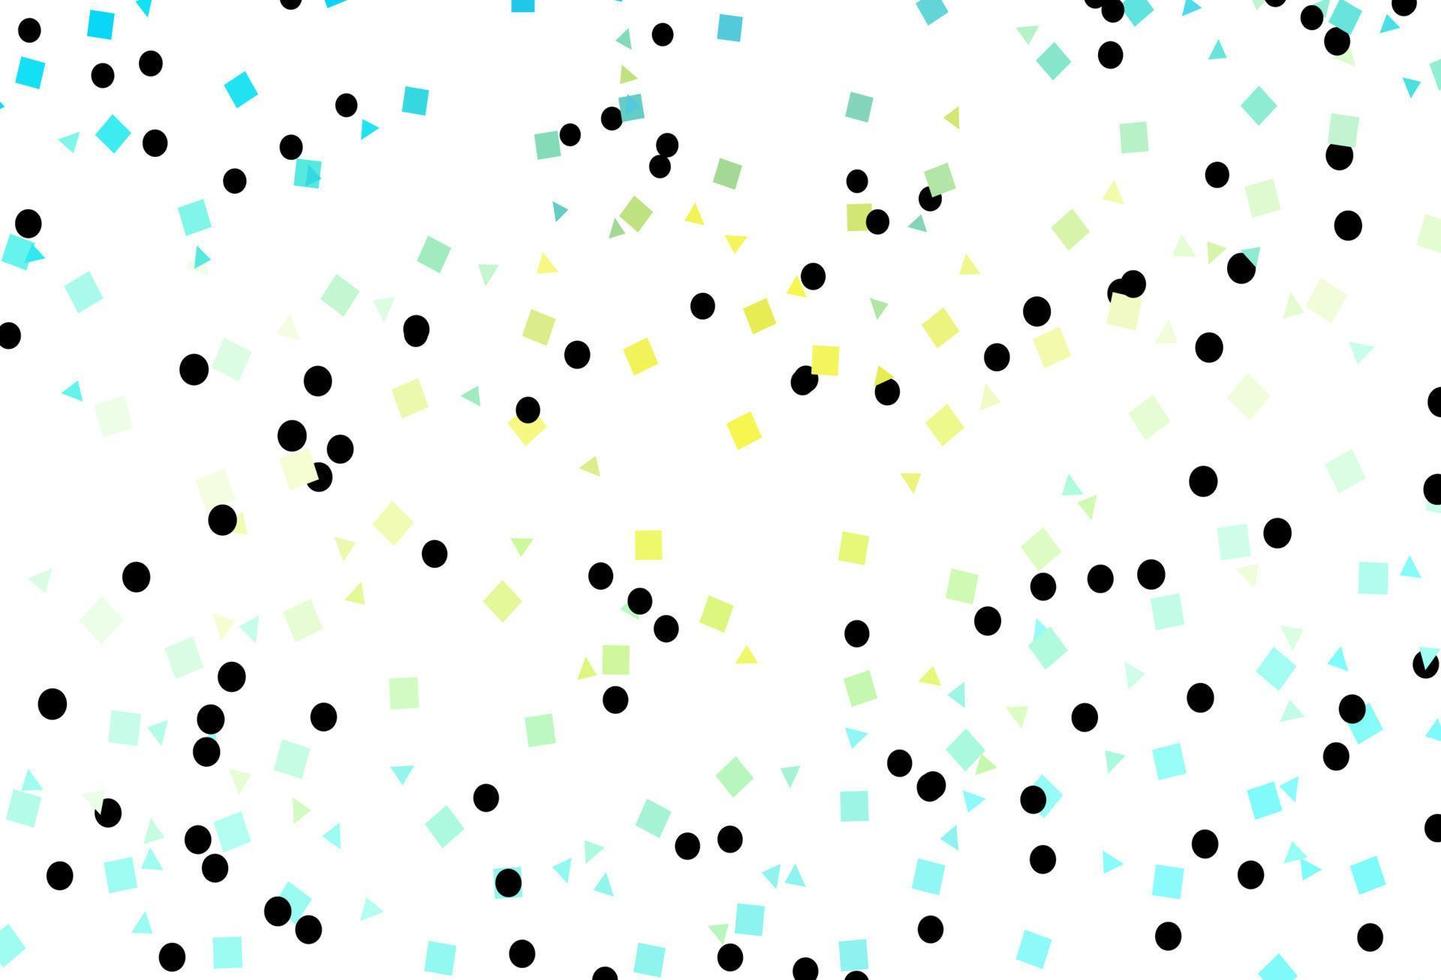 motif vectoriel bleu clair et jaune dans un style polygonal avec des cercles.